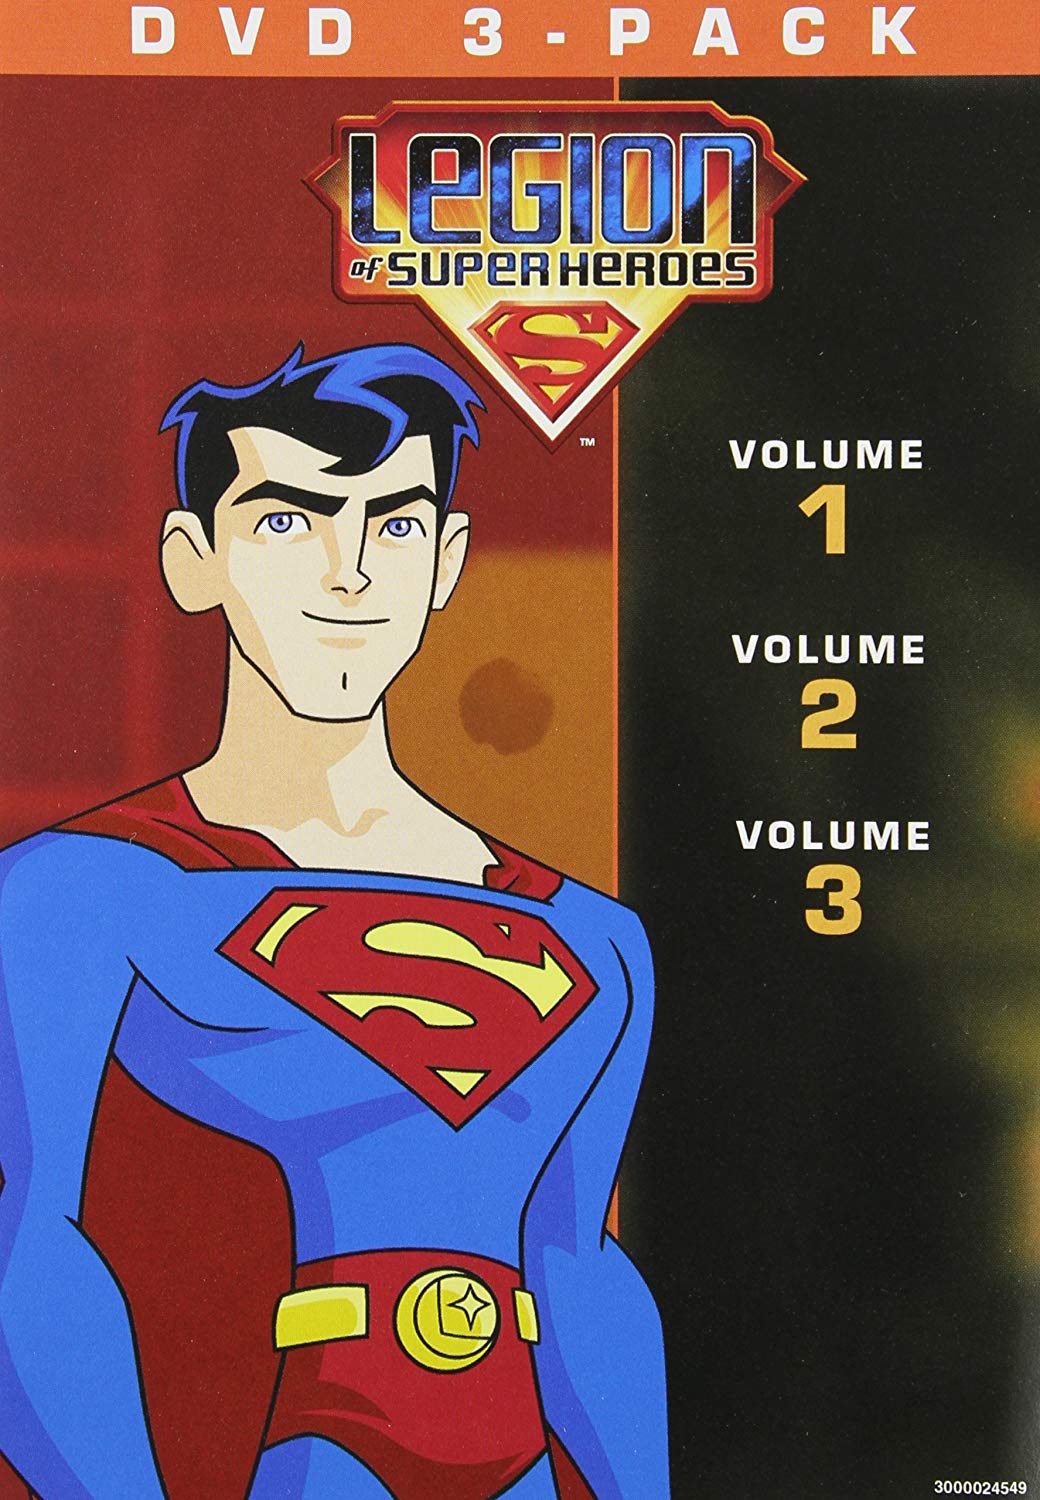 Legion of Superheroes - Volumes 1-3 - DVD